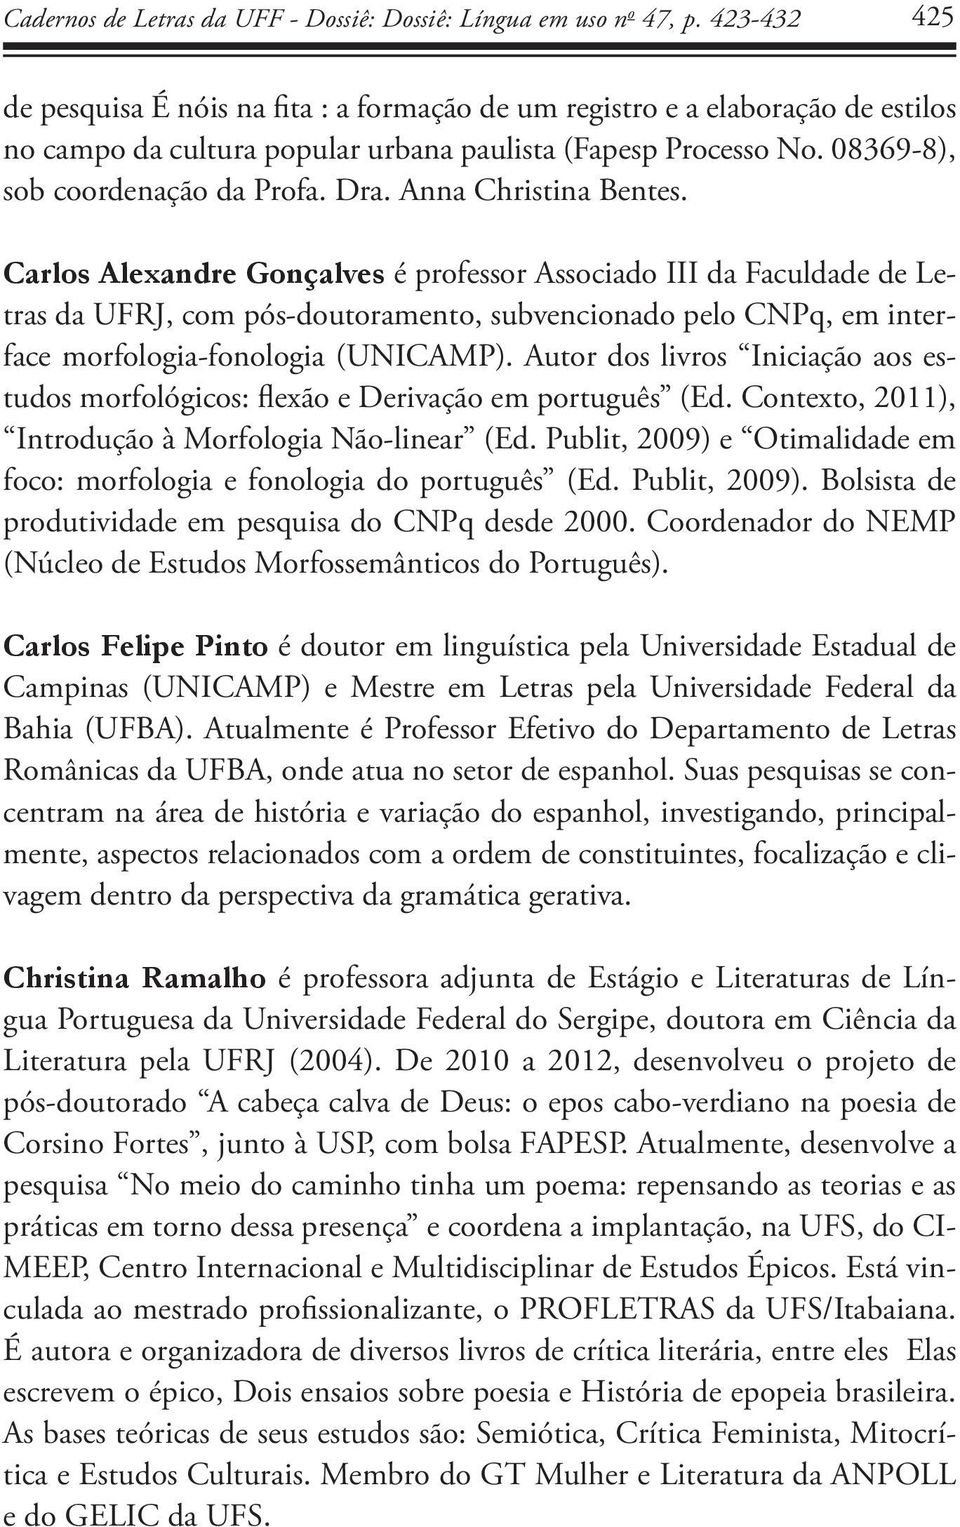 Anna Christina Bentes. Carlos Alexandre Gonçalves é professor Associado III da Faculdade de Letras da UFRJ, com pós-doutoramento, subvencionado pelo CNPq, em interface morfologia-fonologia (UNICAMP).